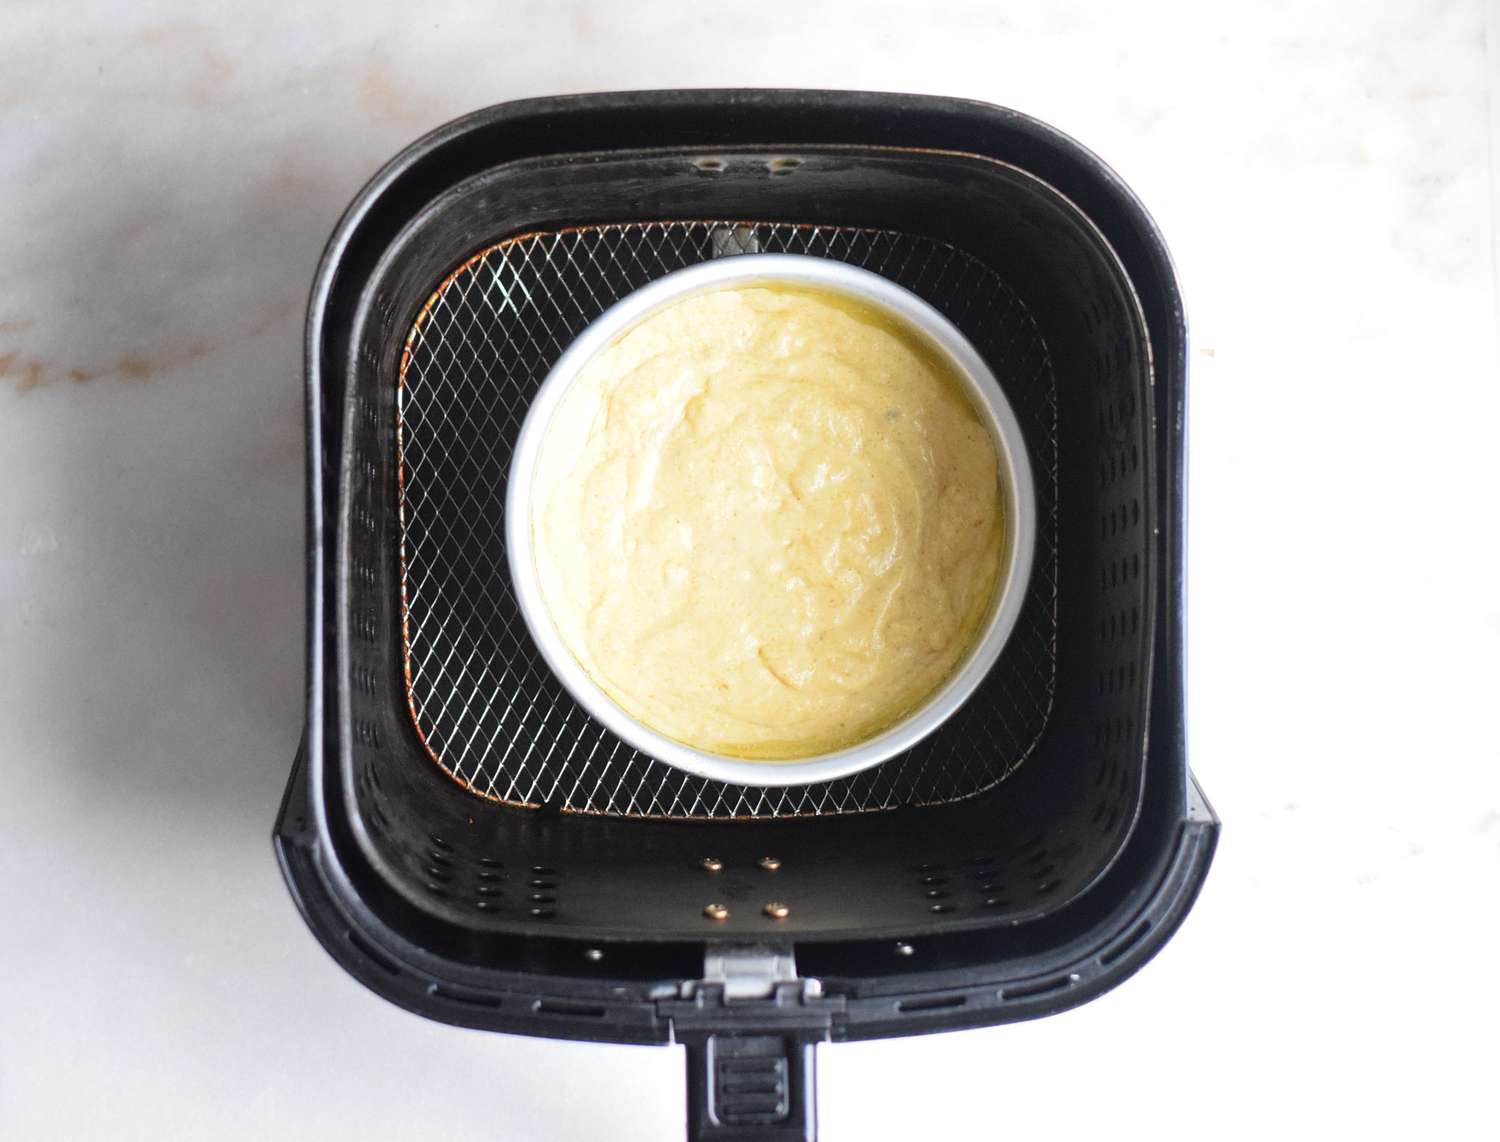 cornbread batter in a pan in an air fryer basket